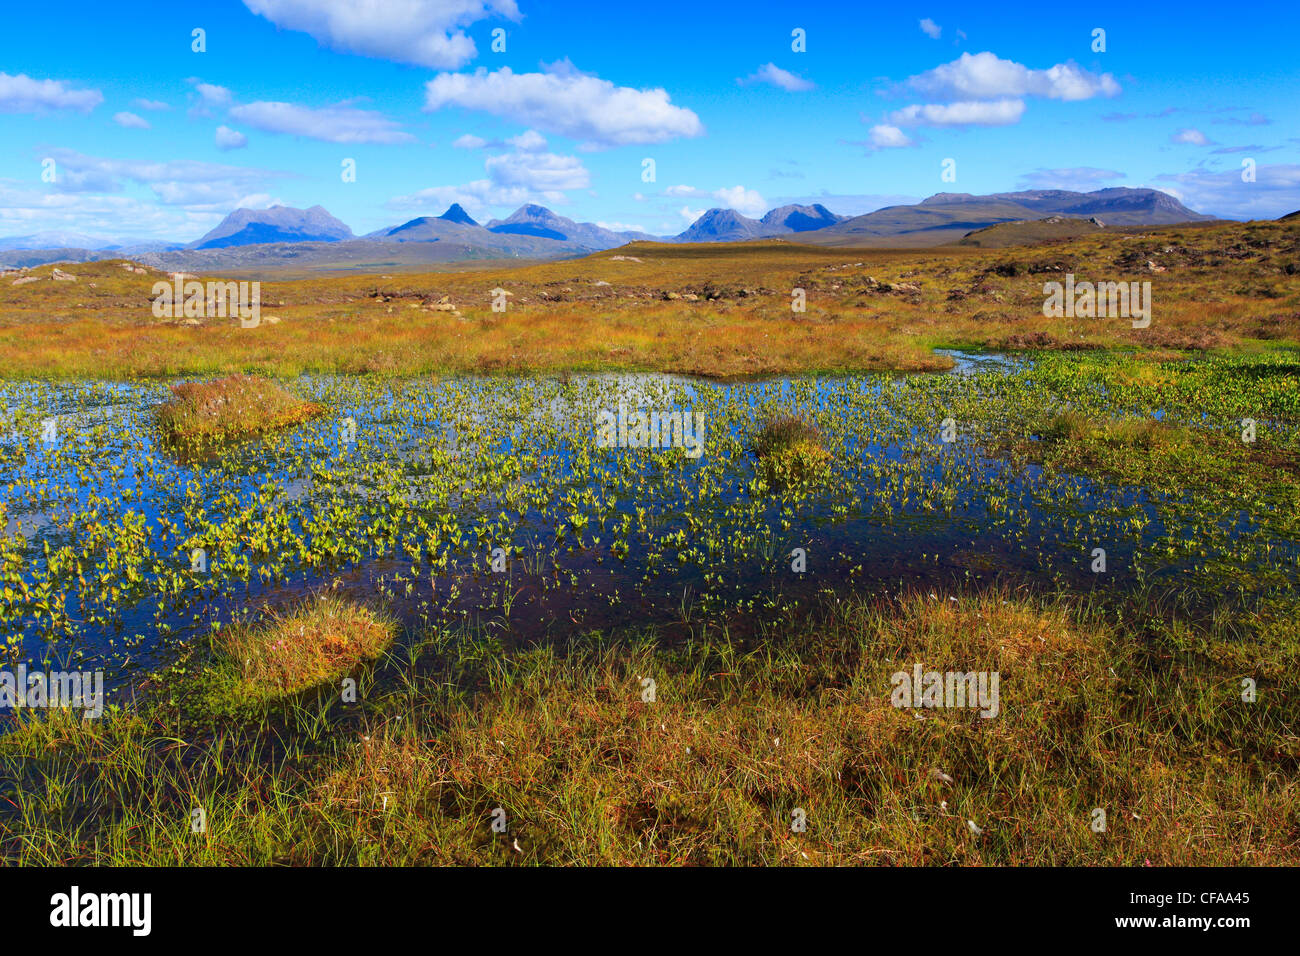 Achiltibuie, Great Britain, Highland, highlands, sky, highland, scenery, hole, hole, marshy landscape, nature, Scottish highland Stock Photo